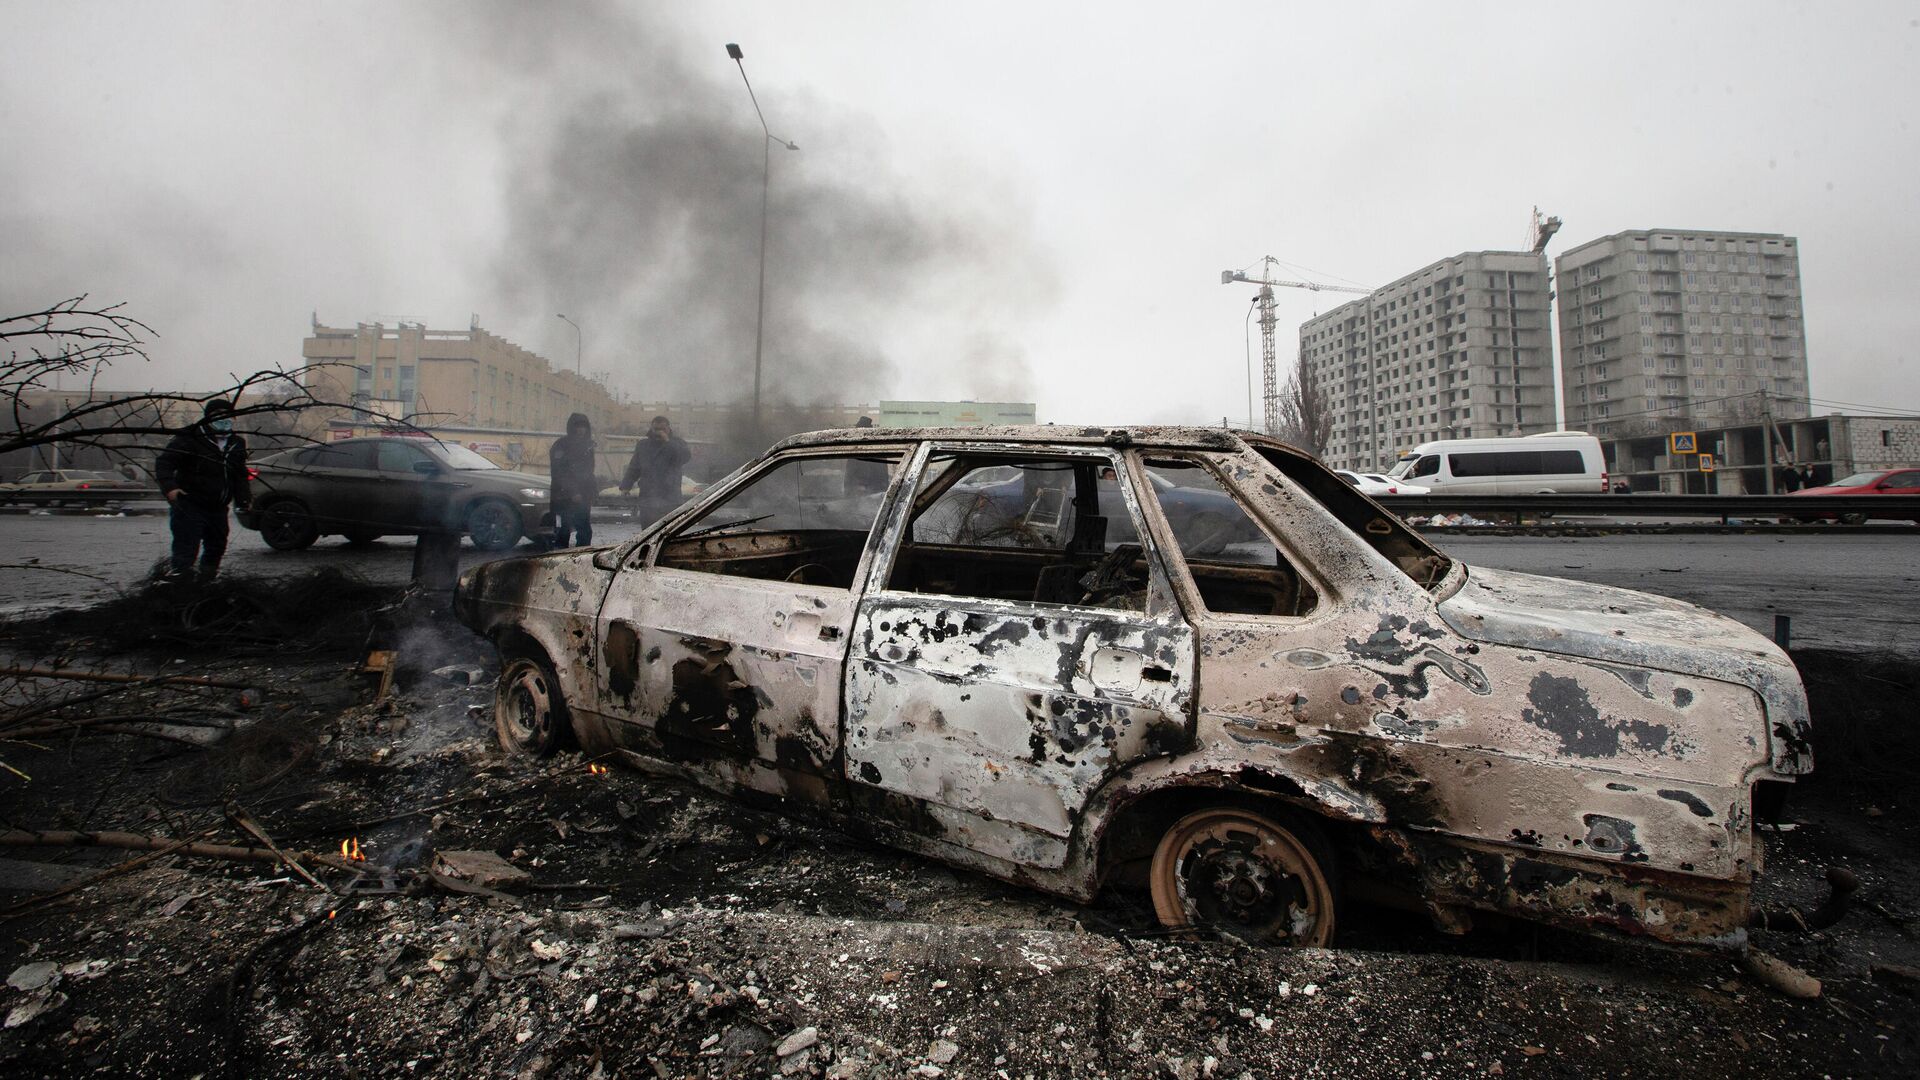 Сгоревший во время протестов автомобиль на улице в Алматы, Казахстан, 9 января 2022 года - Sputnik Азербайджан, 1920, 12.01.2022